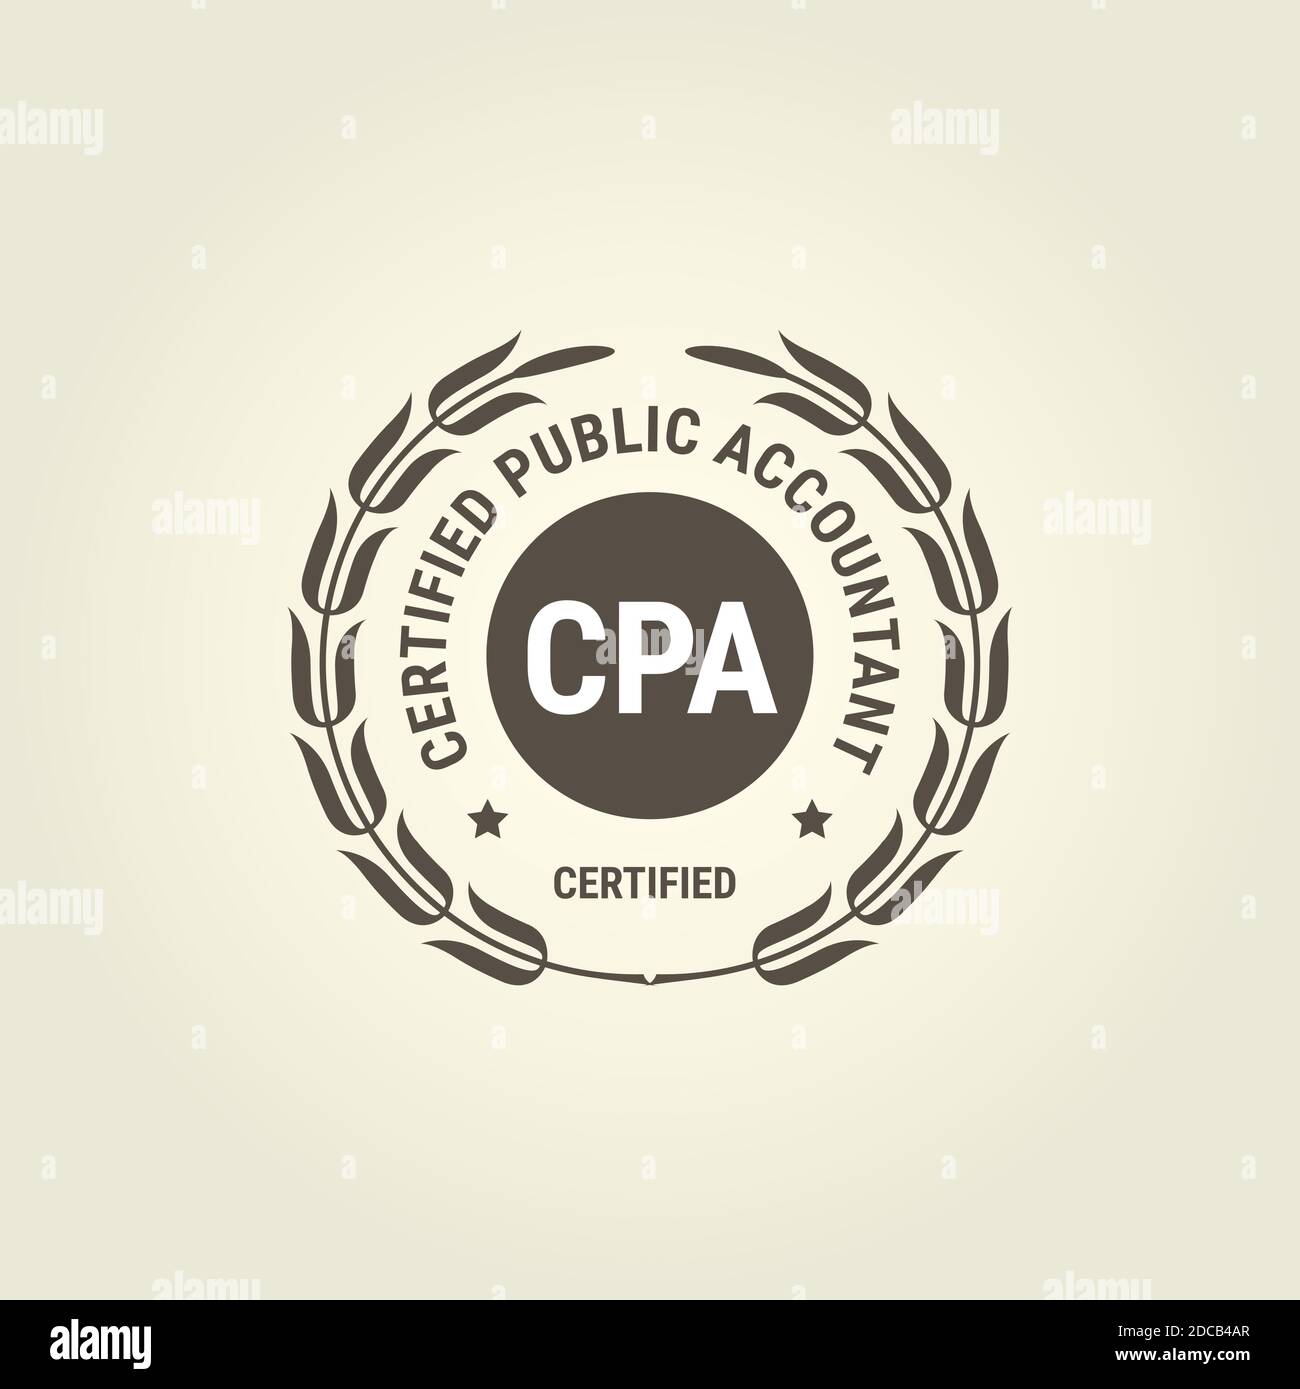 Zertifizierter öffentlicher Buchhalter Emblem, CPA Buchhalter Stempel, Buchhaltung Abzeichen Vektor Illustration Stock Vektor